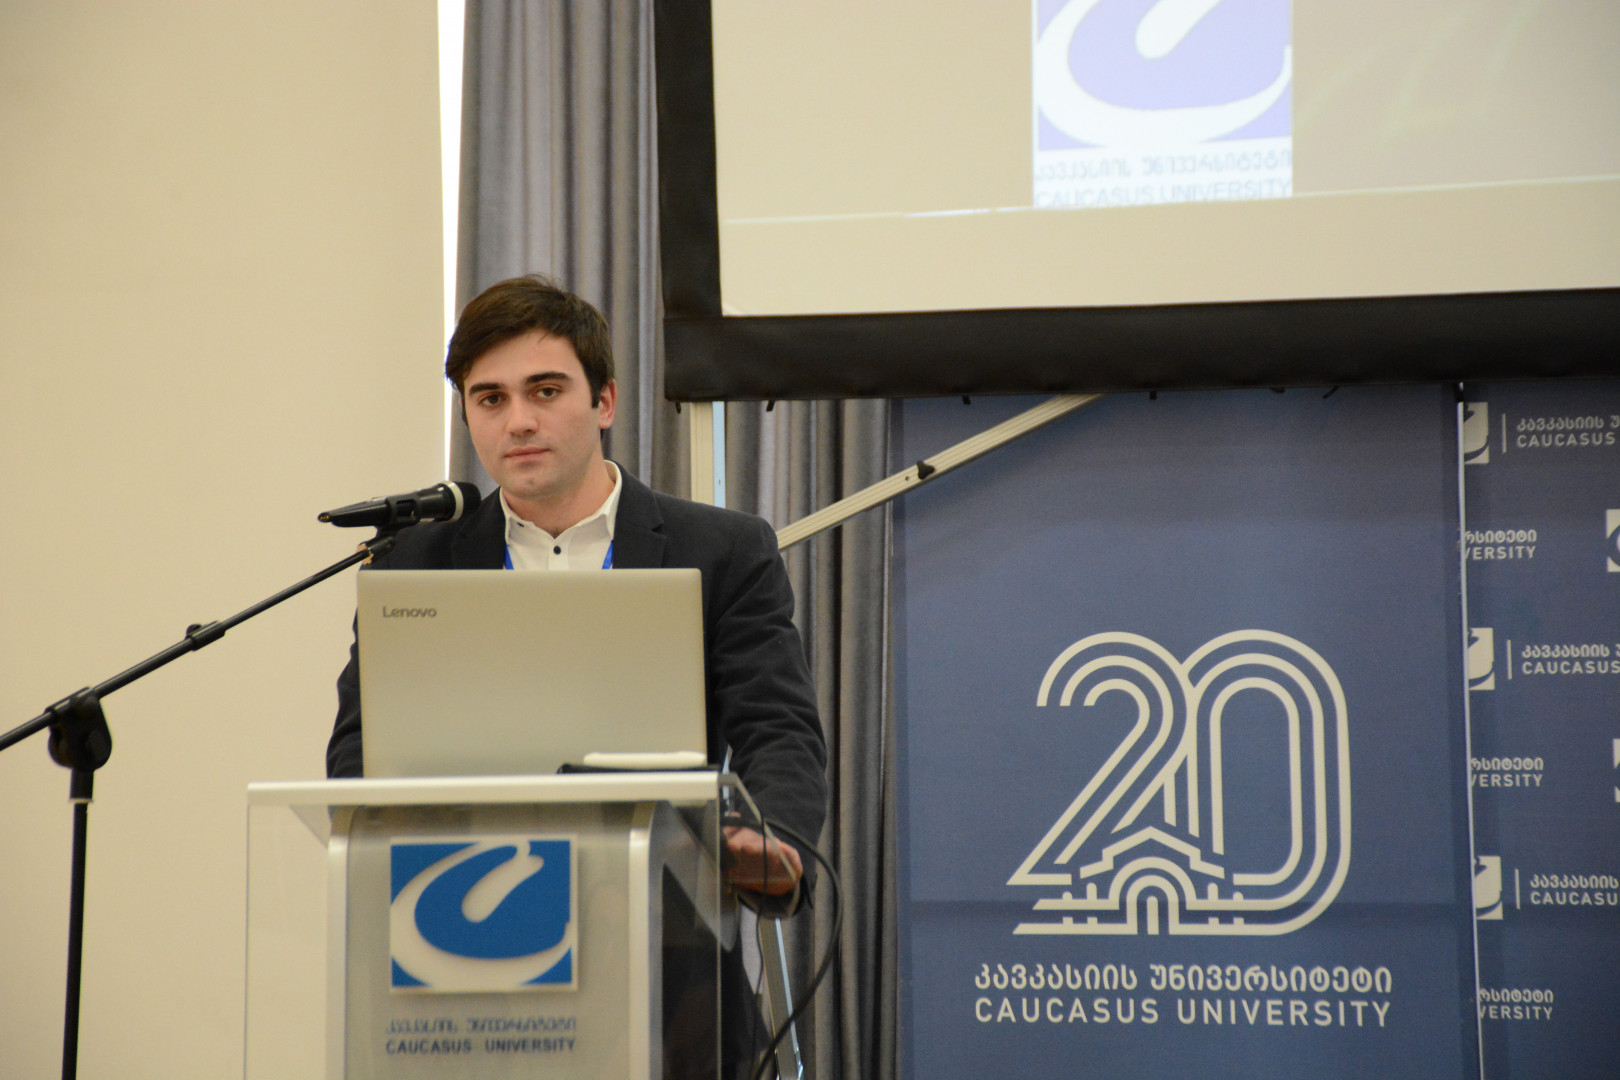 საერთაშორისო კონფერენცია კავკასიის უნივერსიტეტში